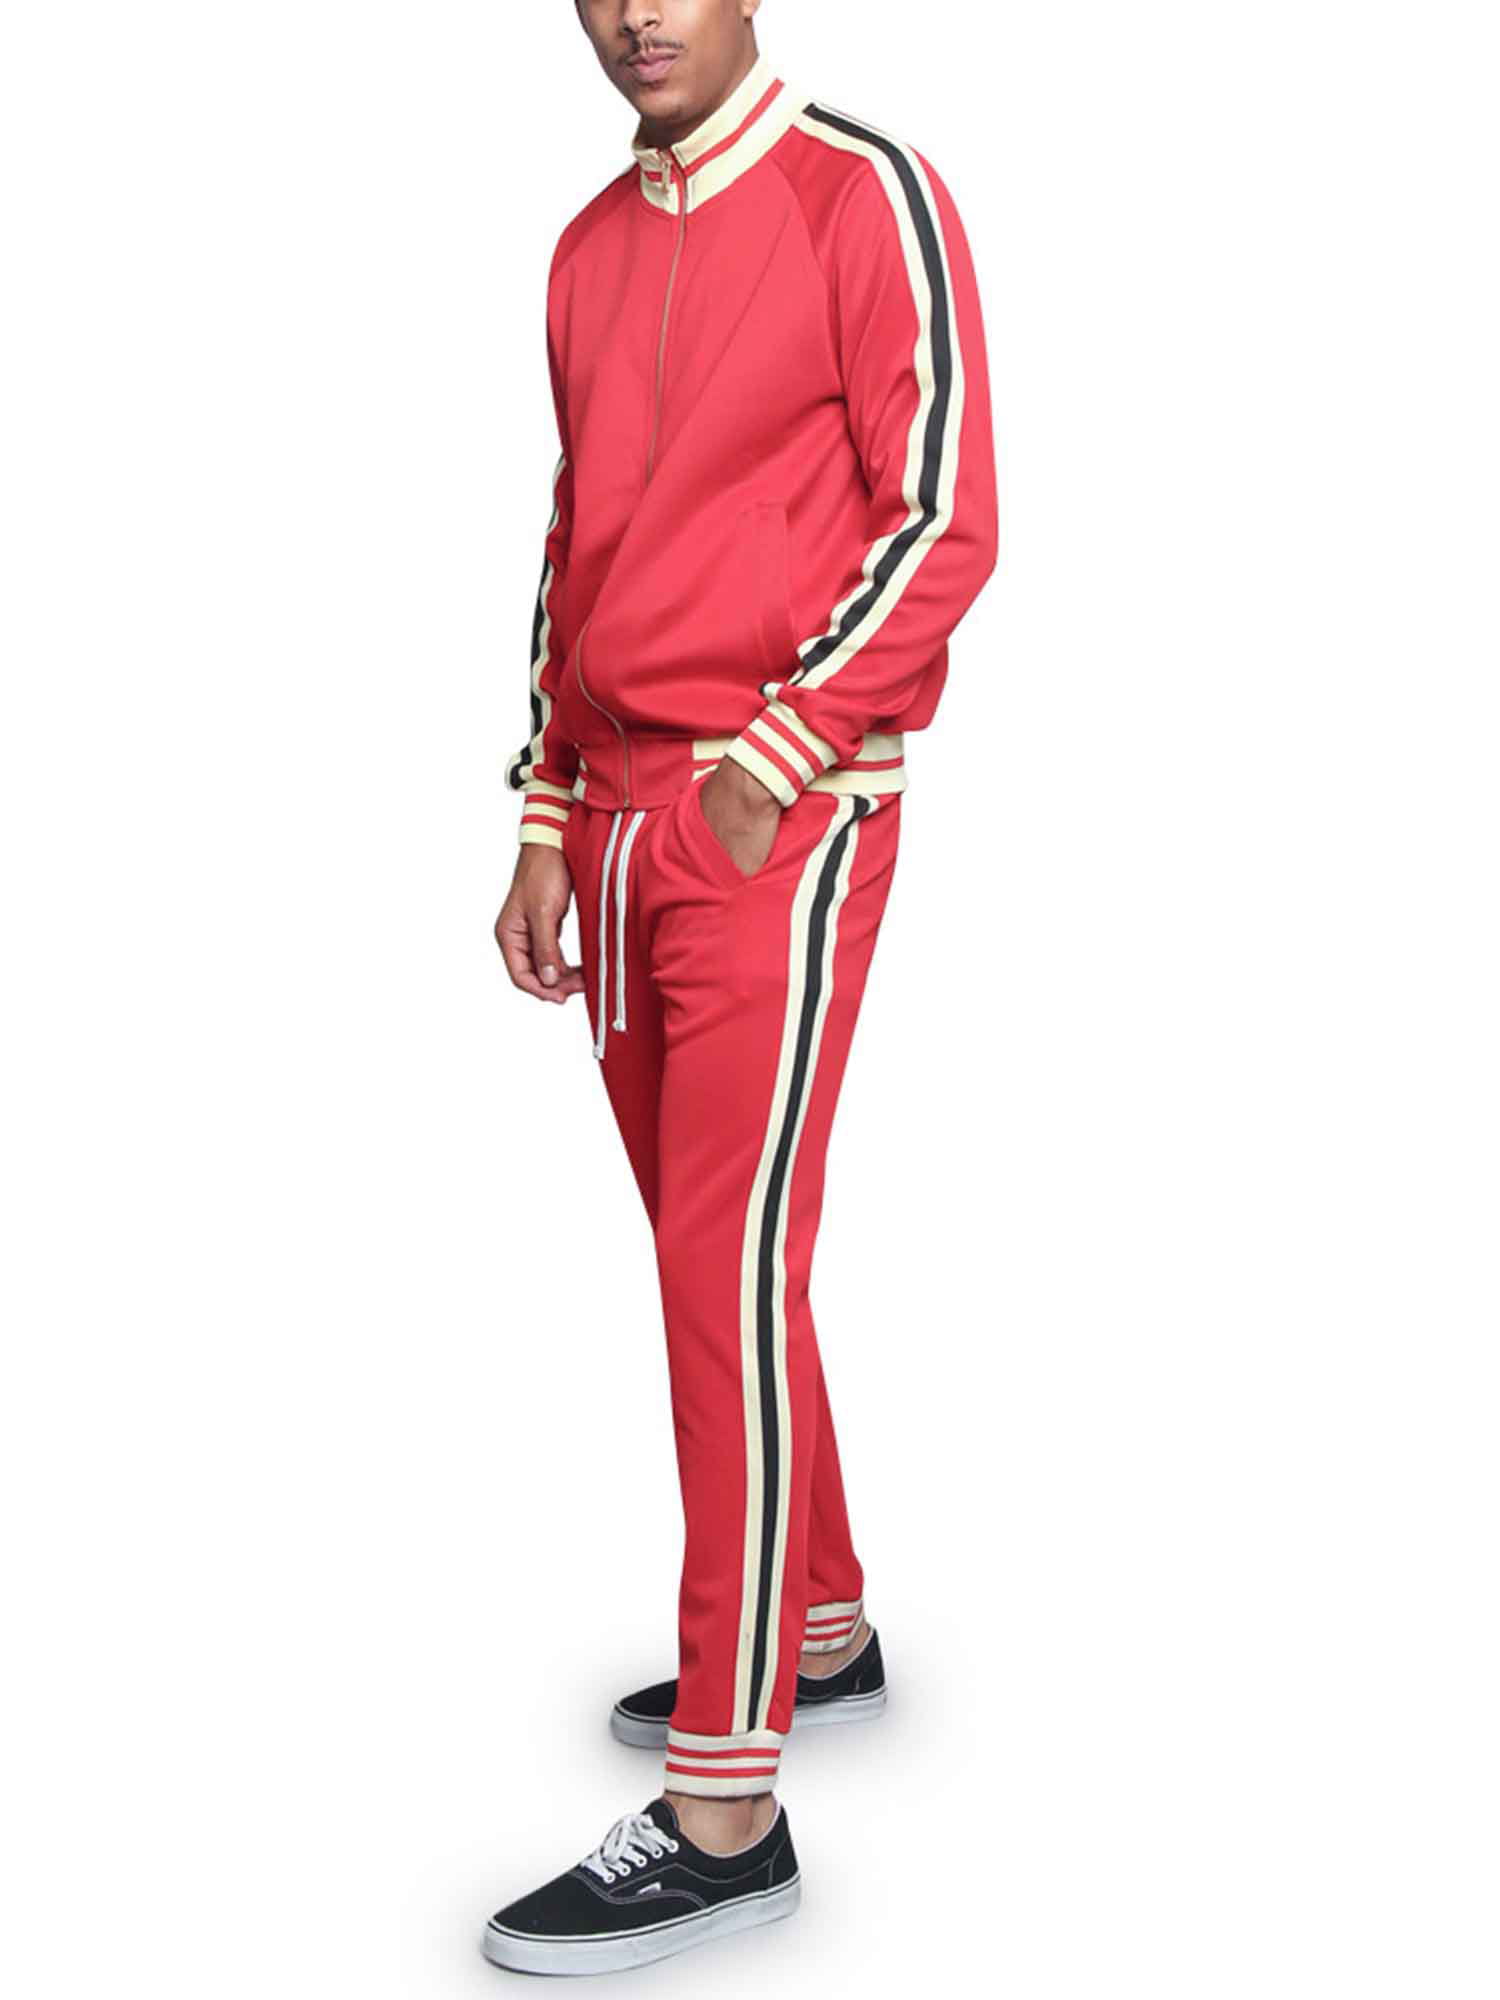 Men's G Track Suits 2 Piece Sweatsuit Set ST575 - Red - 5X-Large